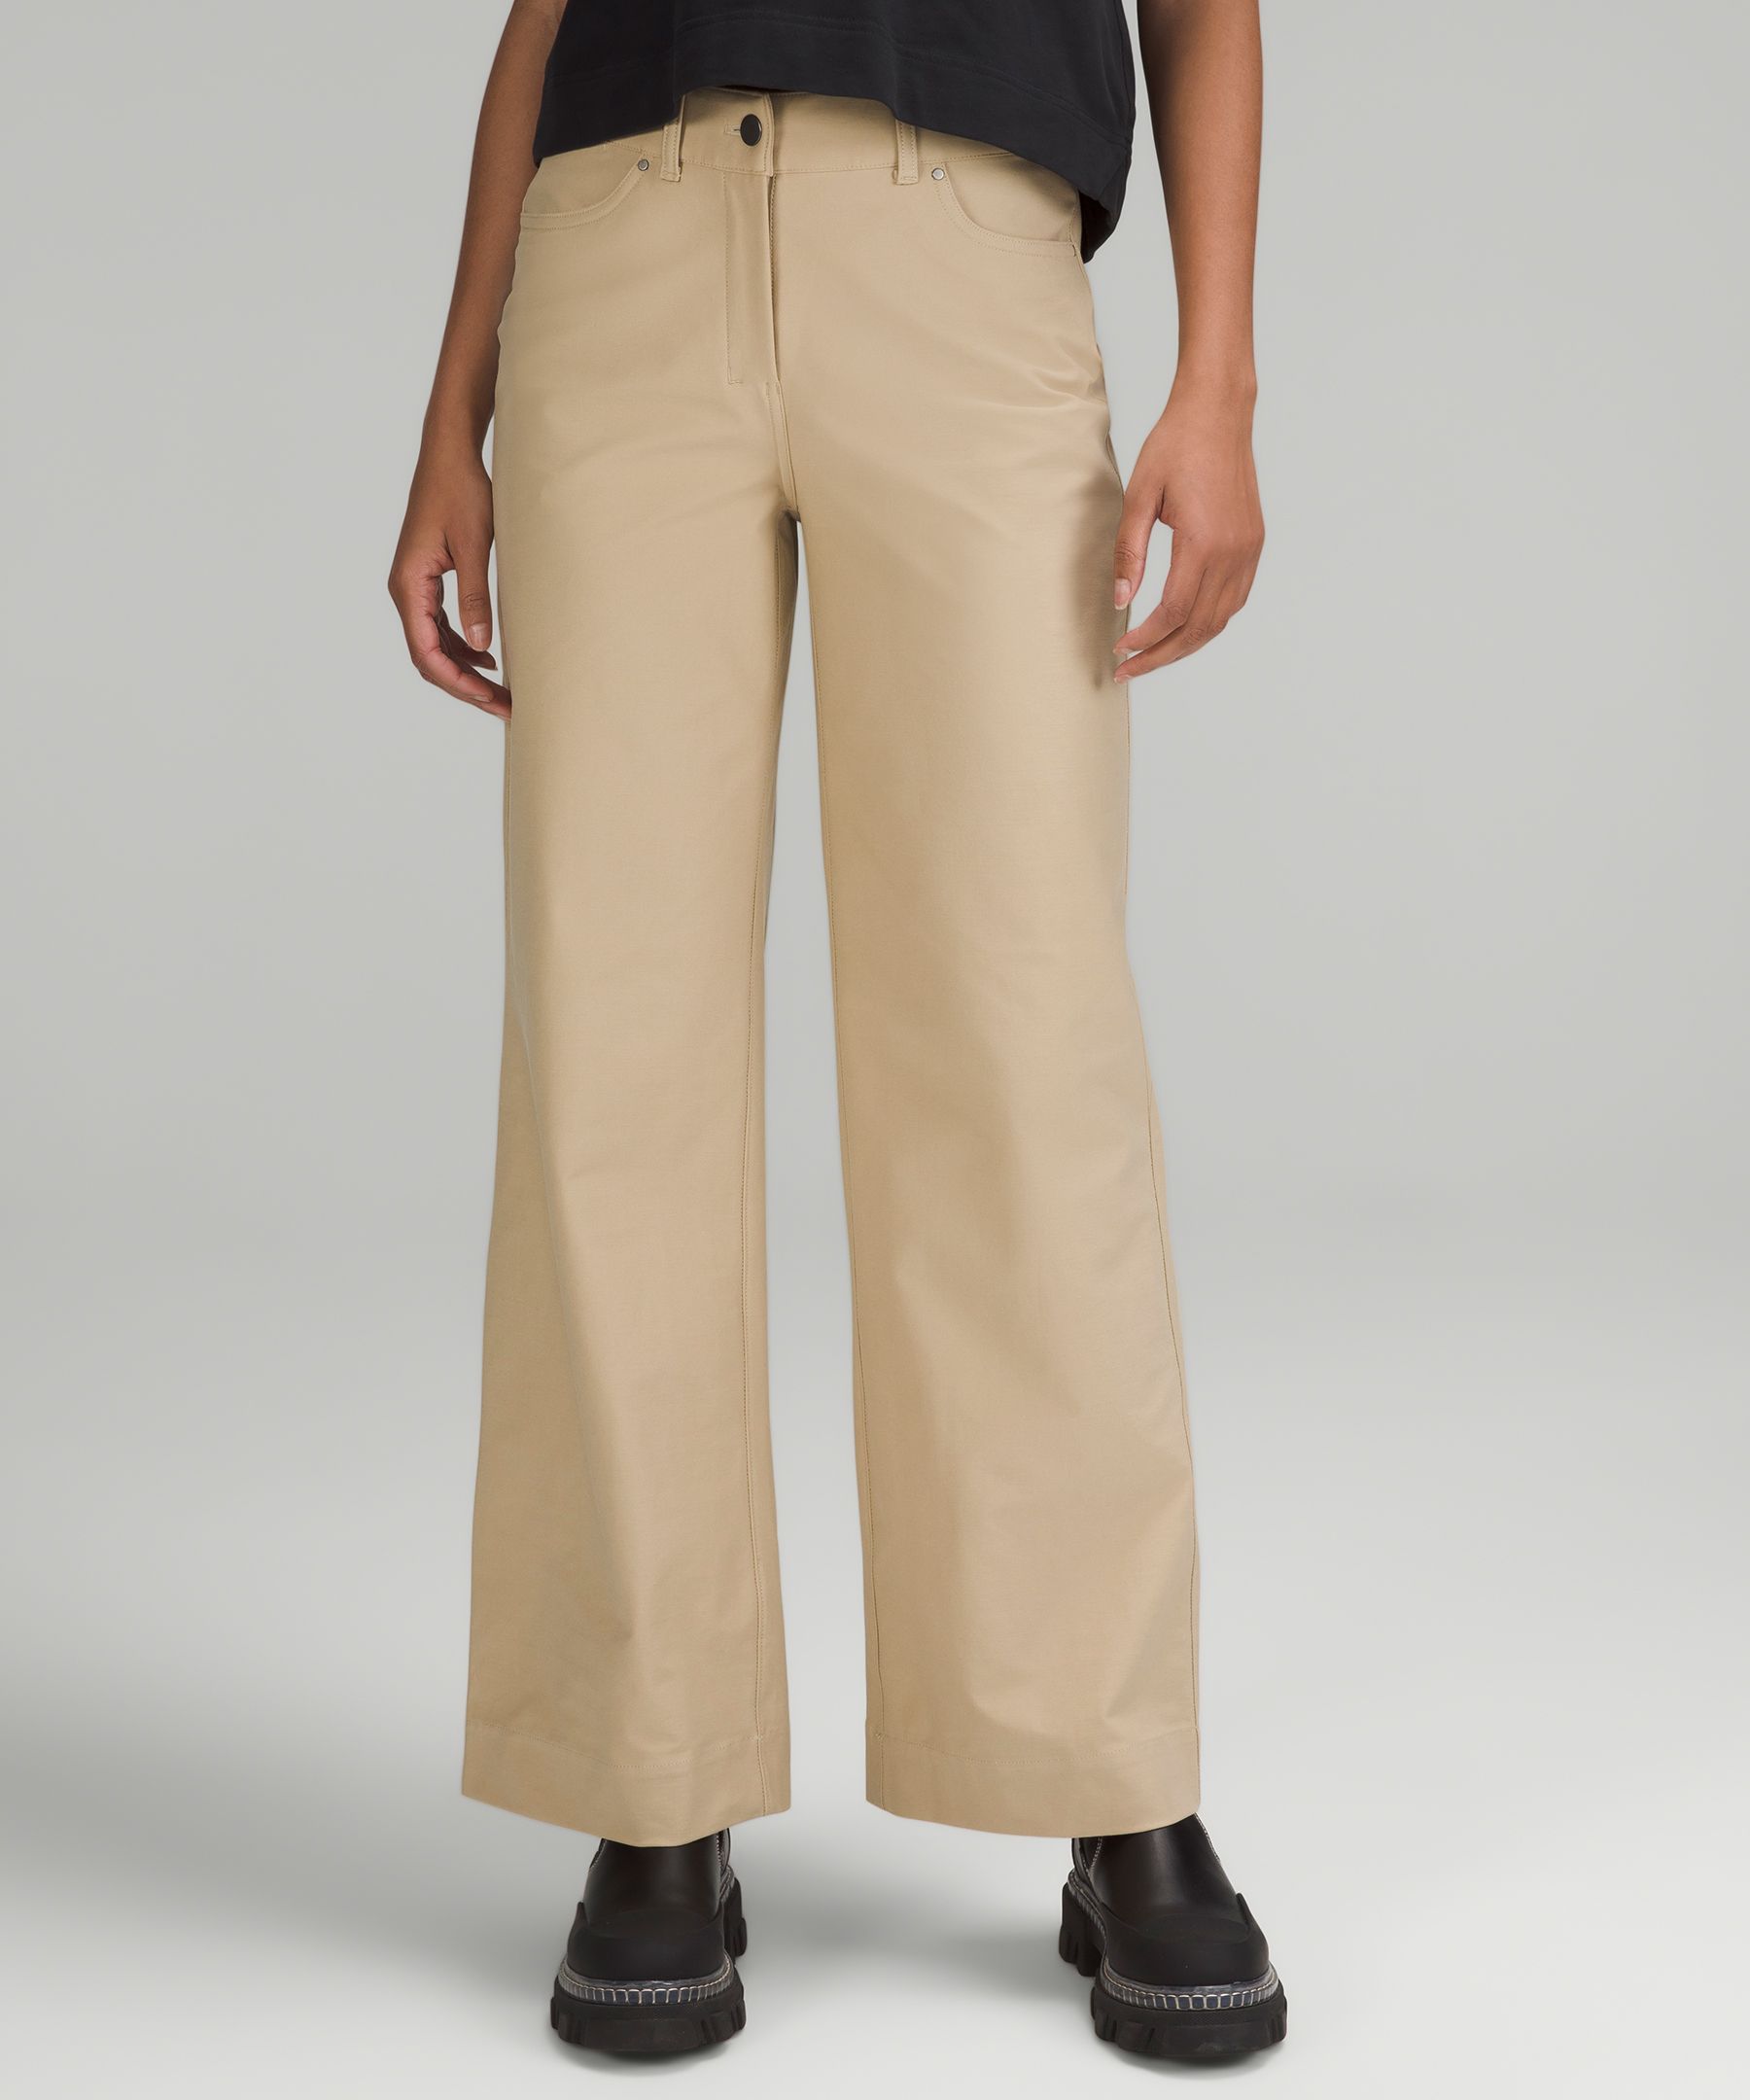 Lululemon City Sleek 5 Pocket High-rise Wide-leg Pants Full Length Light  Utilitech